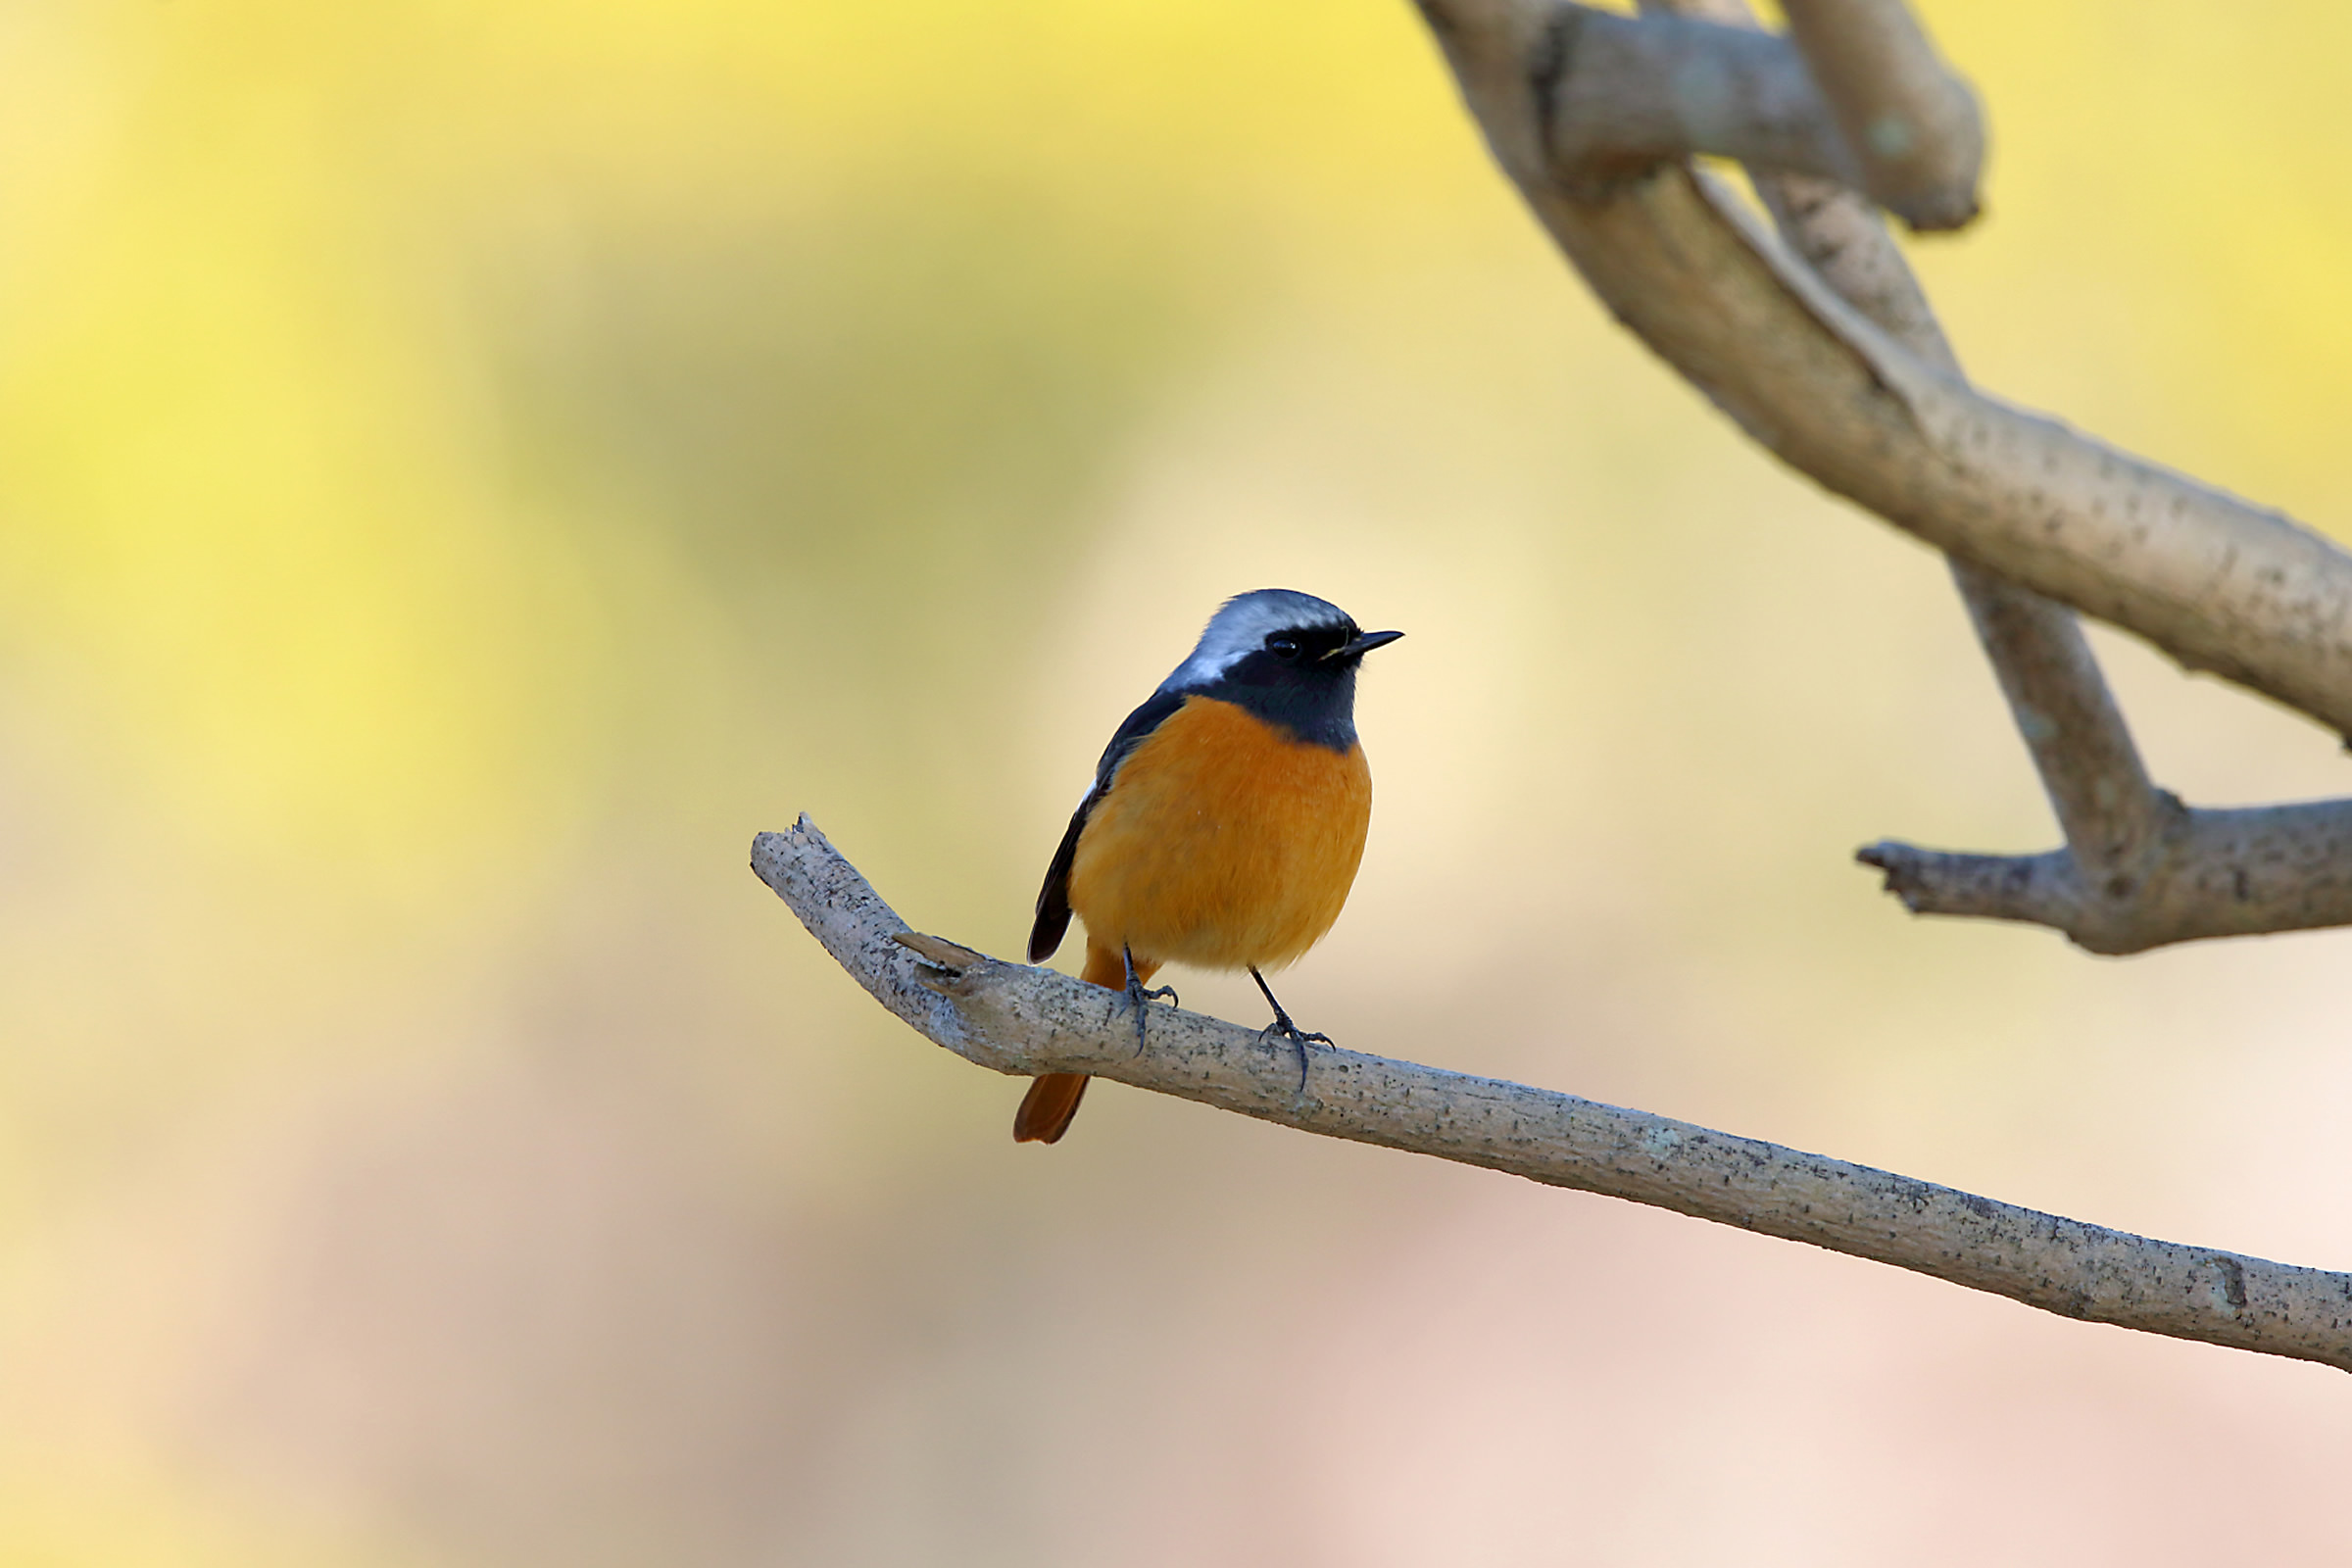 ジョウビタキ オレンジのお腹と青い帽子 野鳥写真図鑑 キヤノンバードブランチプロジェクト